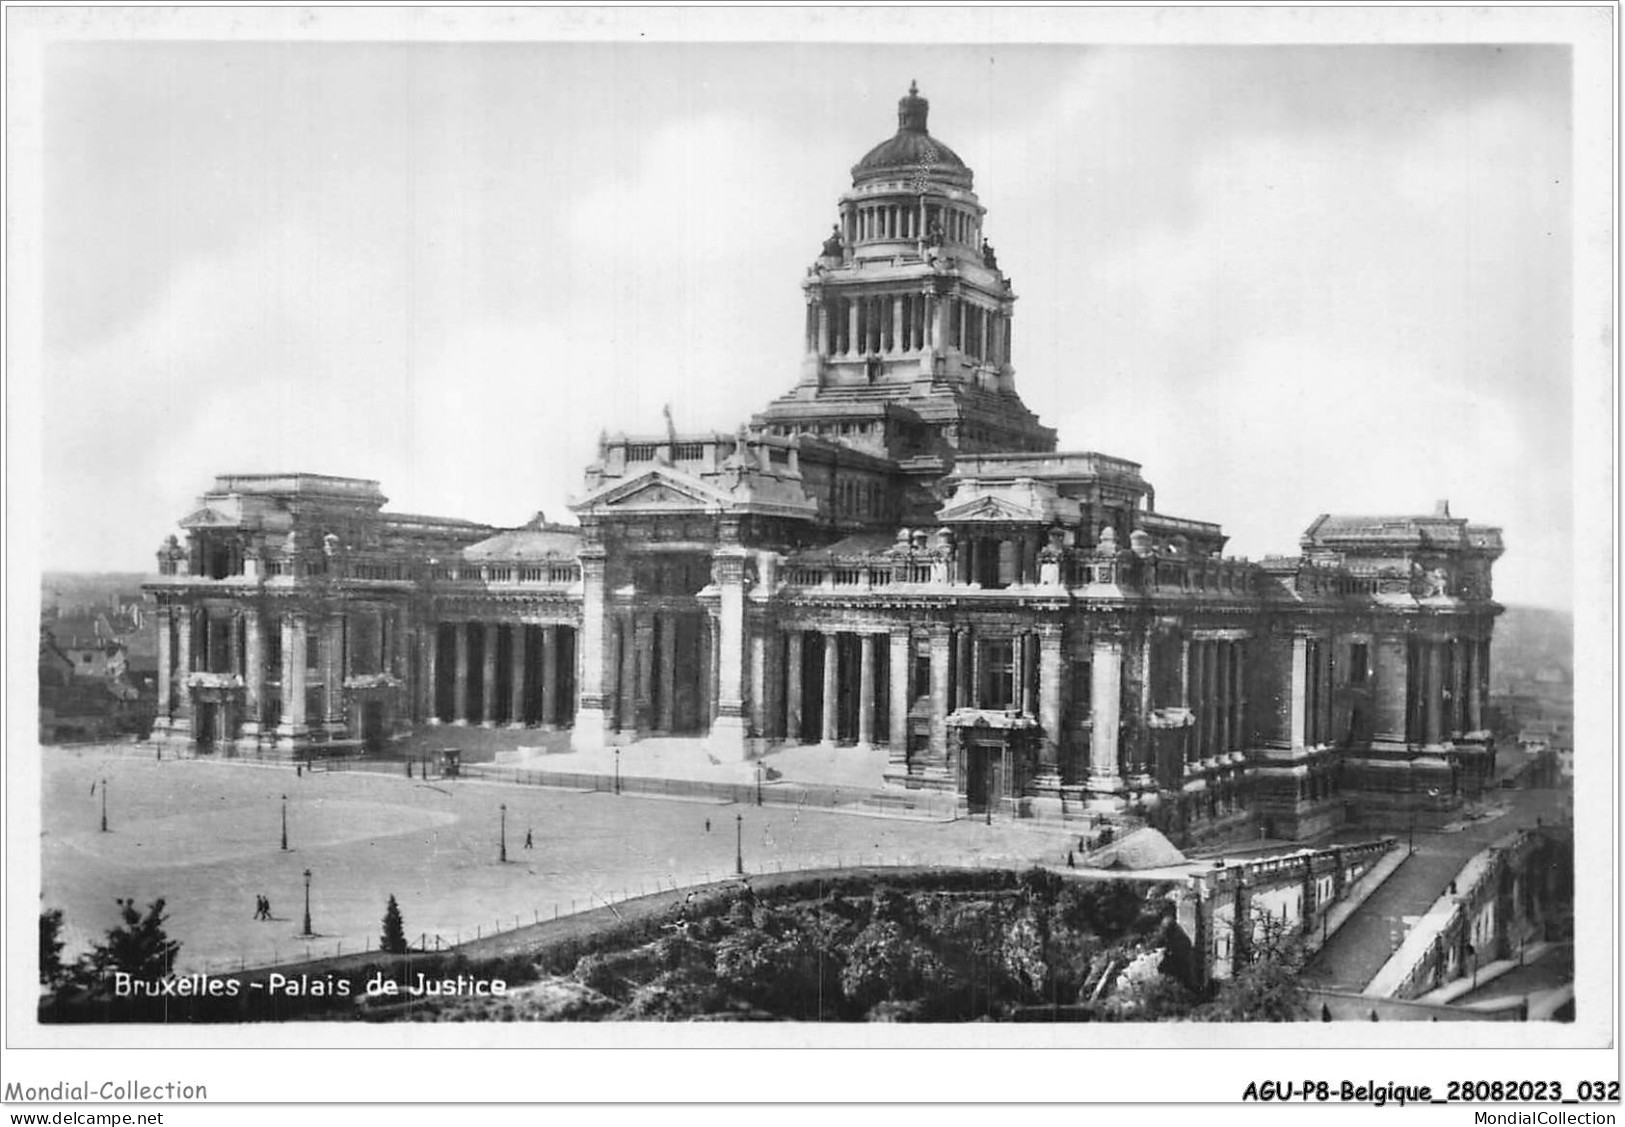 AGUP8-0643-BELGIQUE - BRUXELLES - Palais De Justice - Monuments, édifices